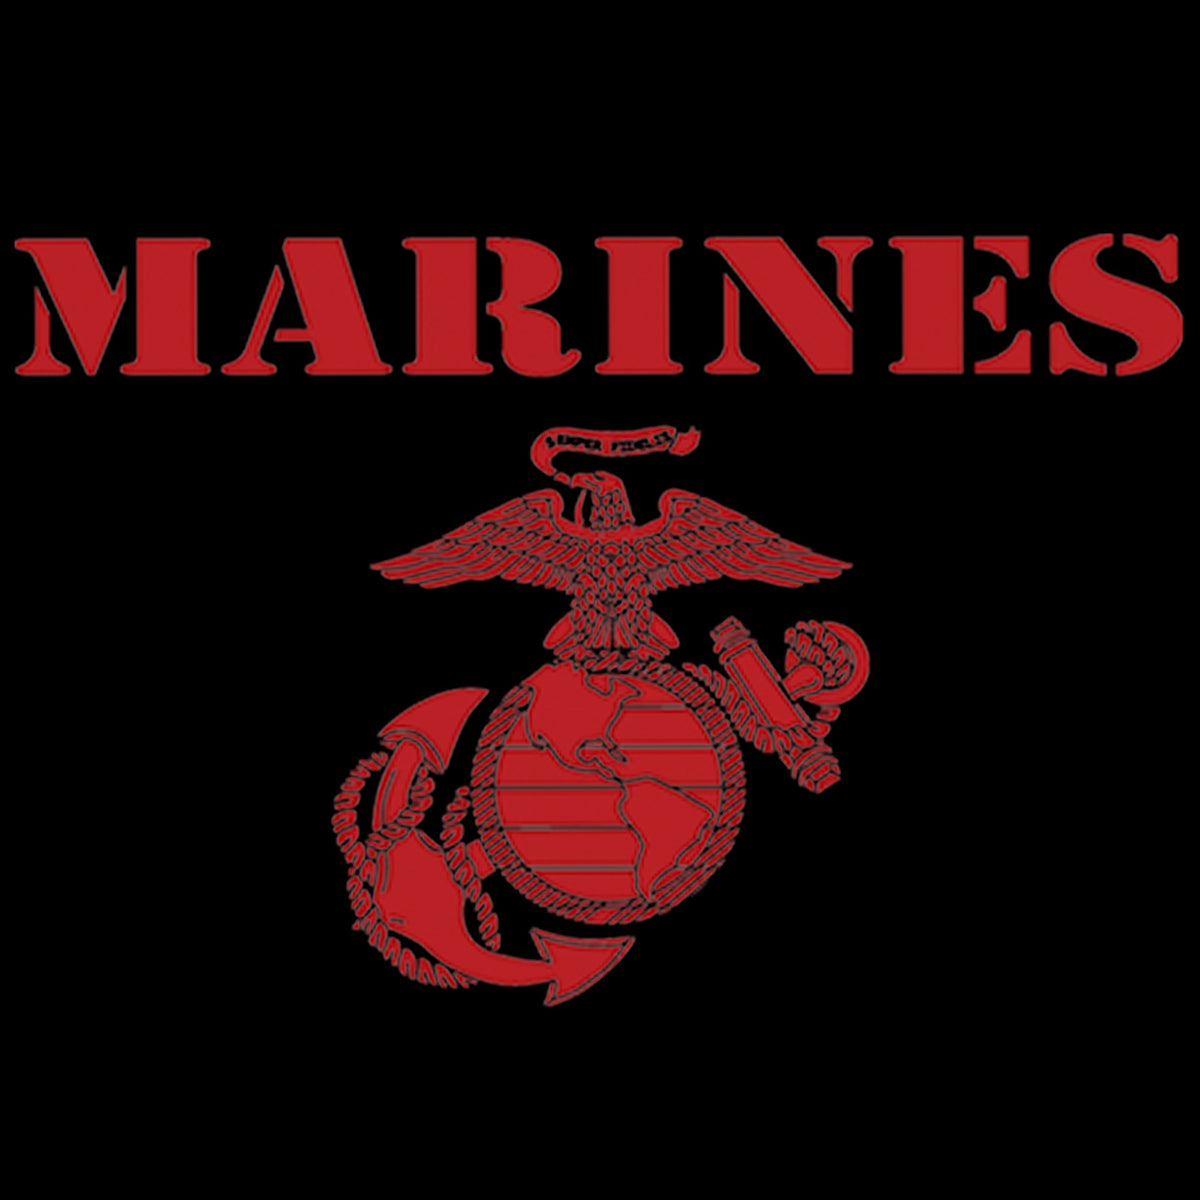 Red Vintage Marines Long Sleeve Tee